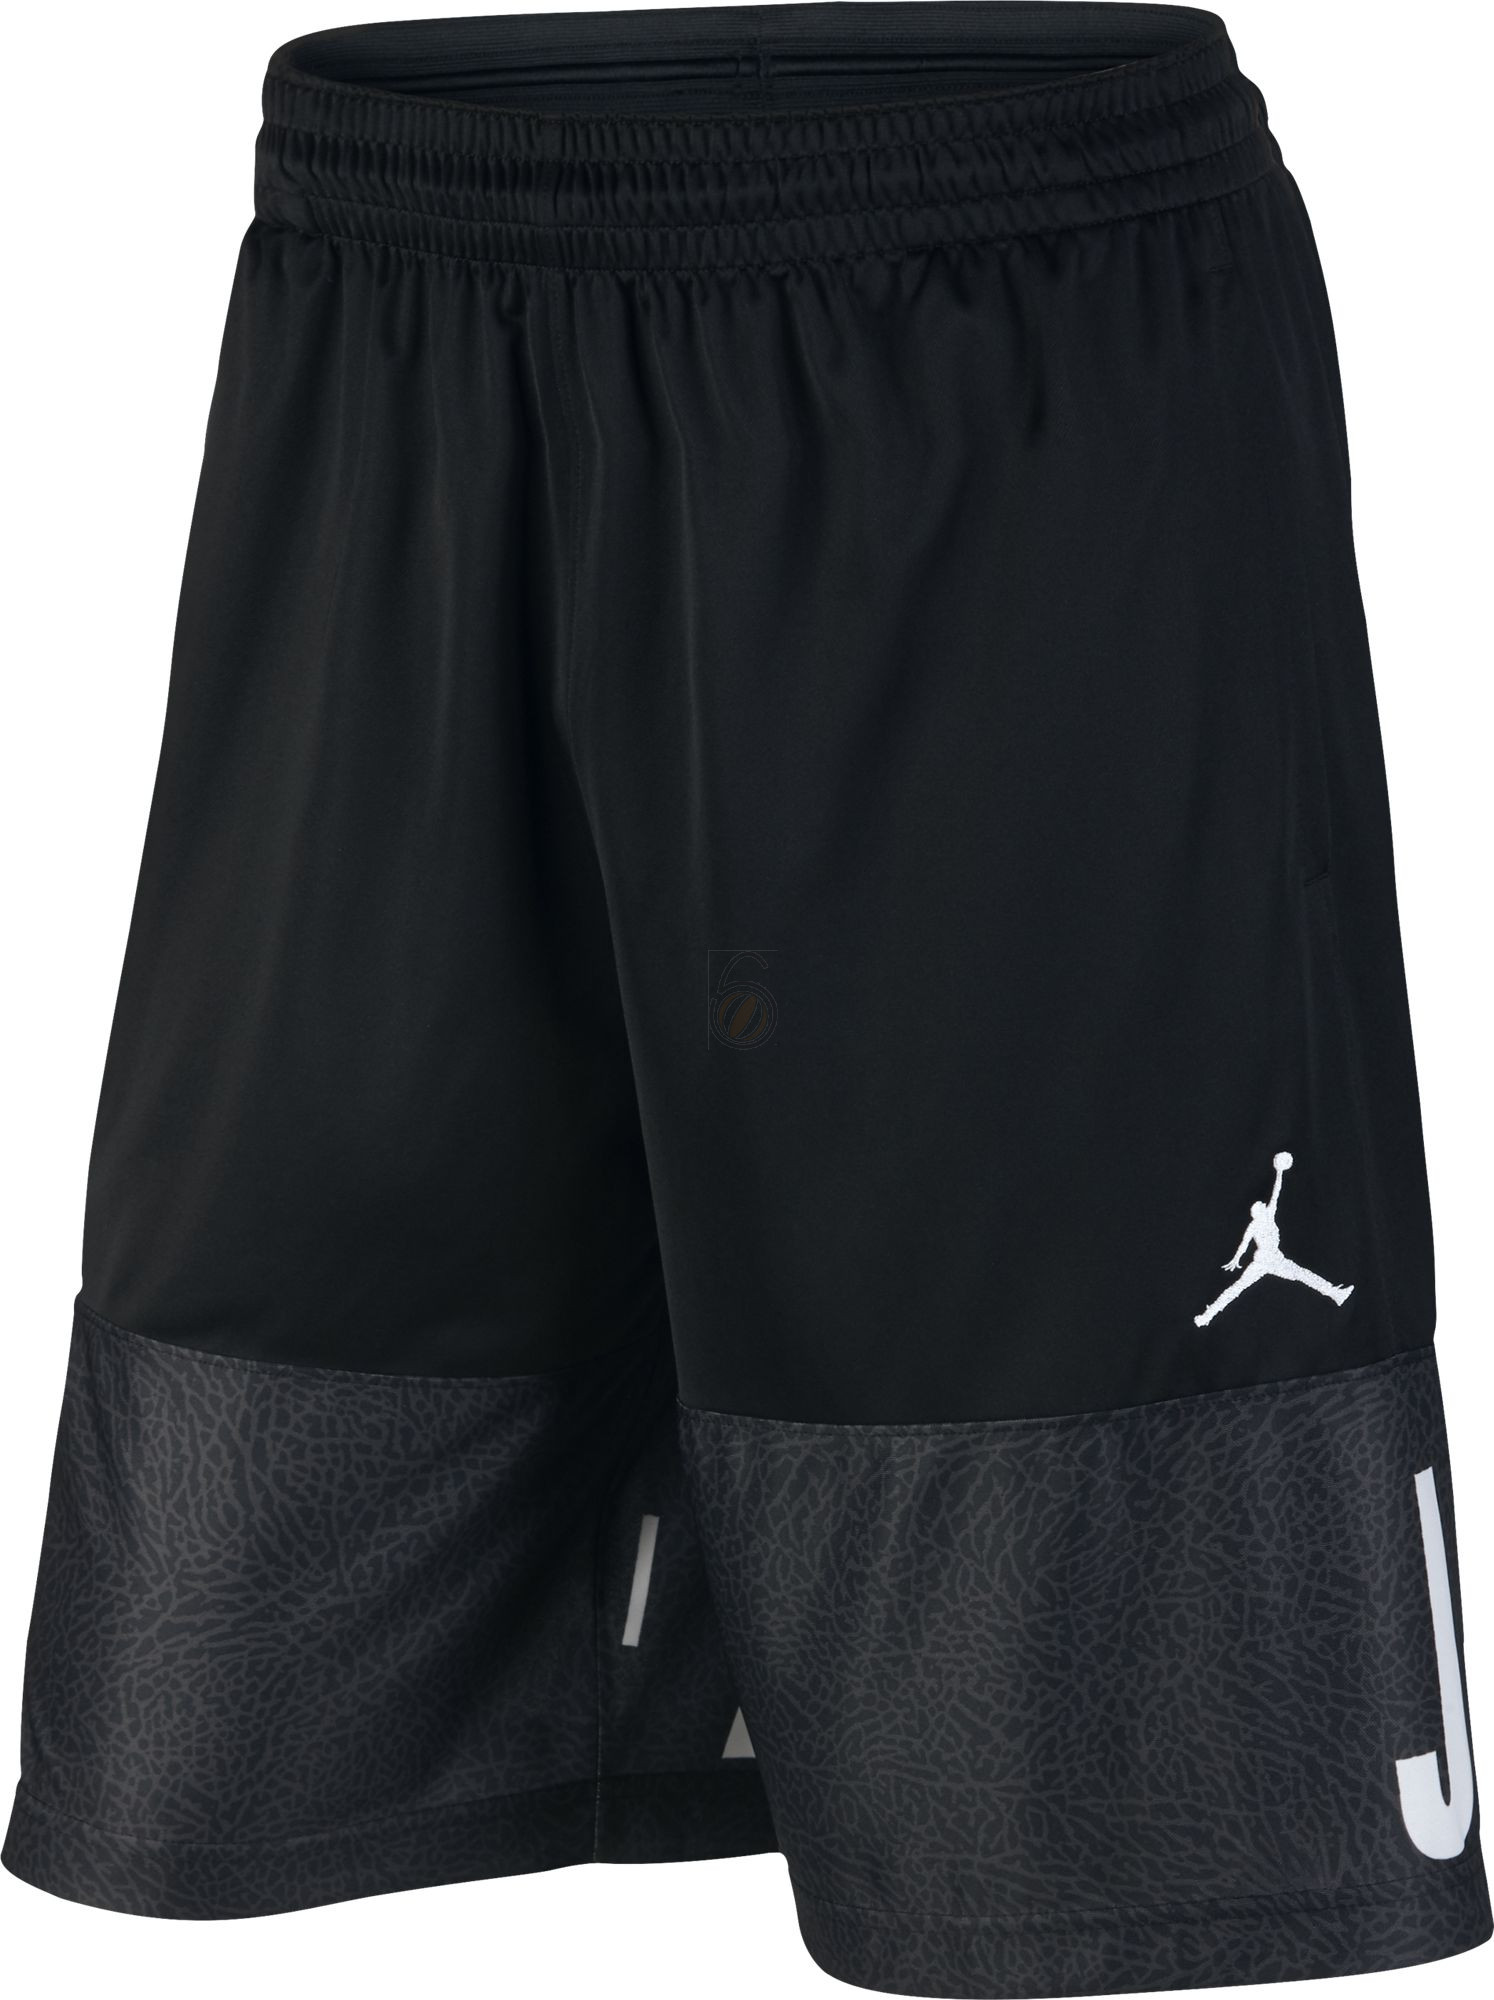 nike air jordan basketball shorts, Nike Jordan Air Classic Blockout Basketball Shorts - NK-831338-010